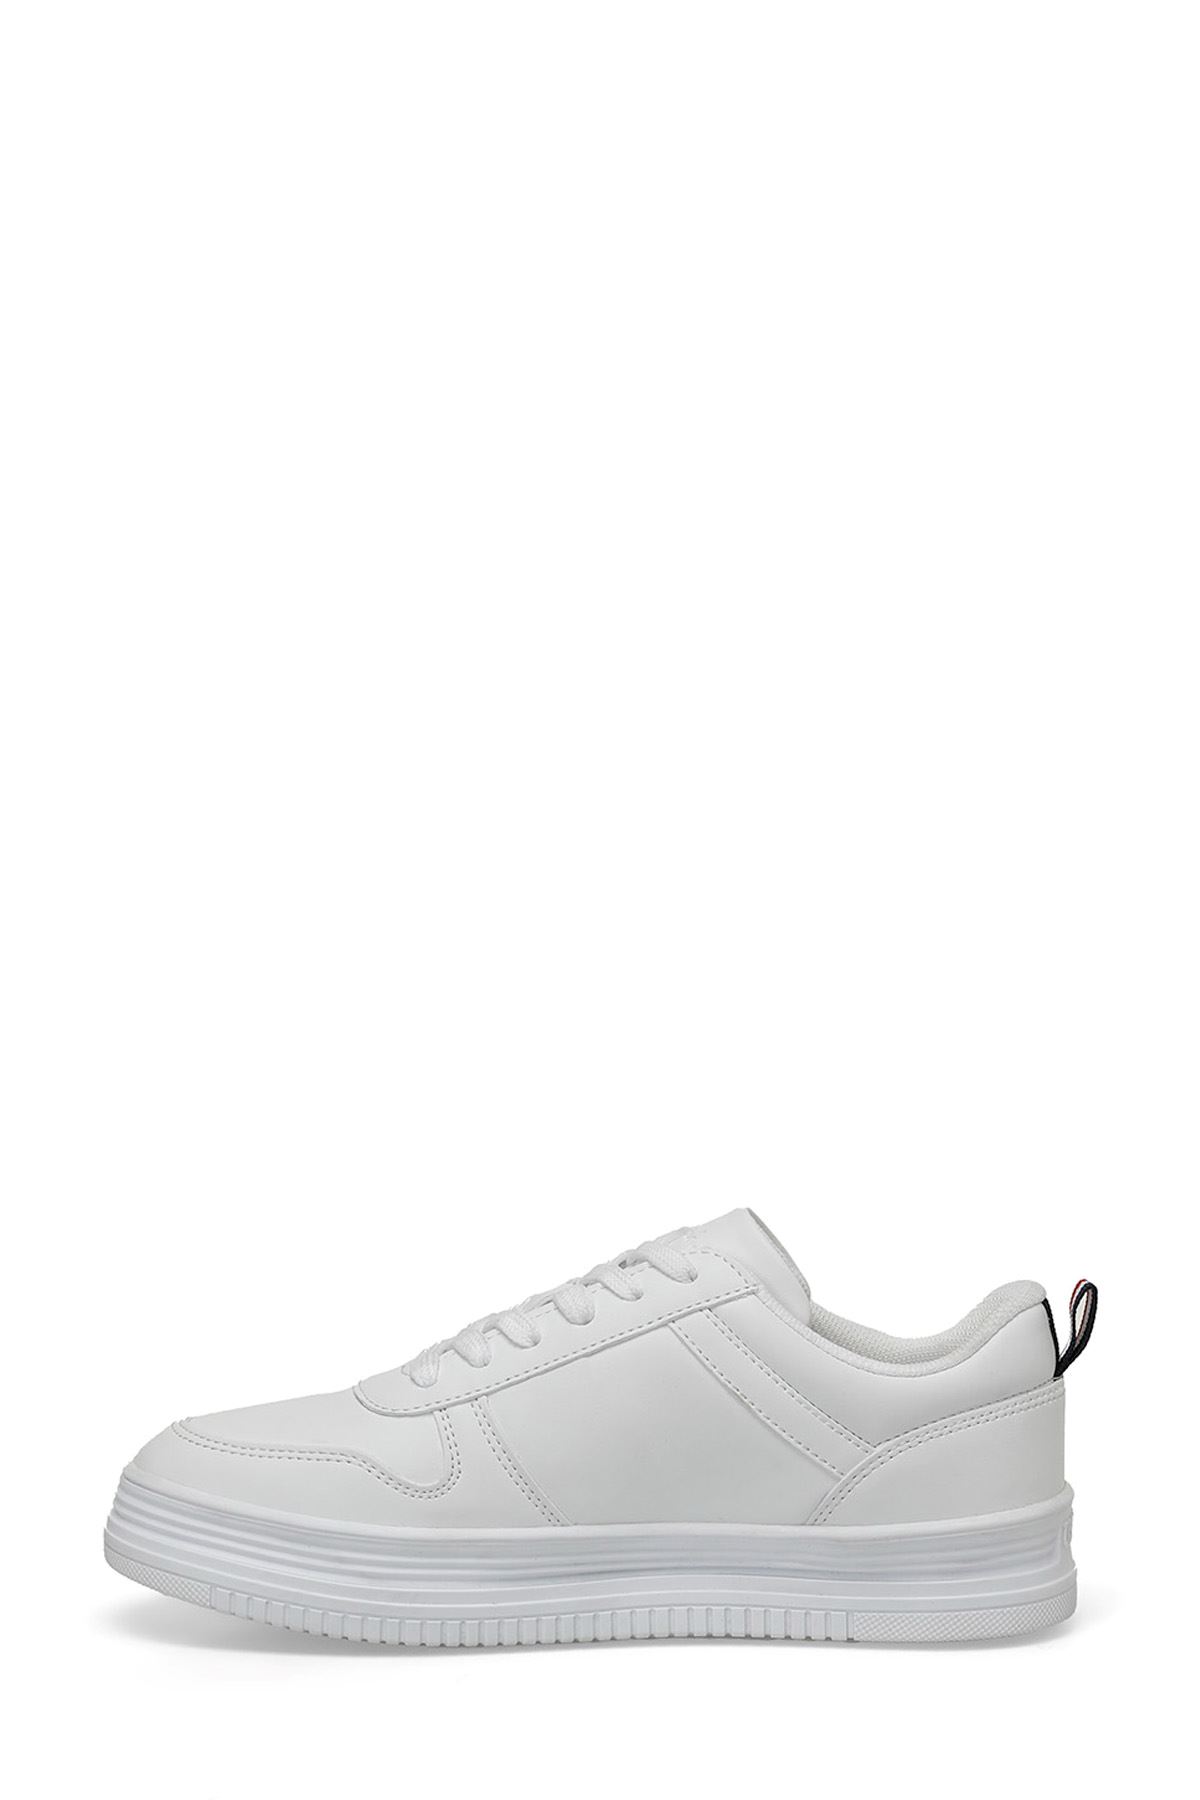 Surı 4Fx U.S. Polo Assn. Kadın Beyaz Spor Ayakkabı - 101532631